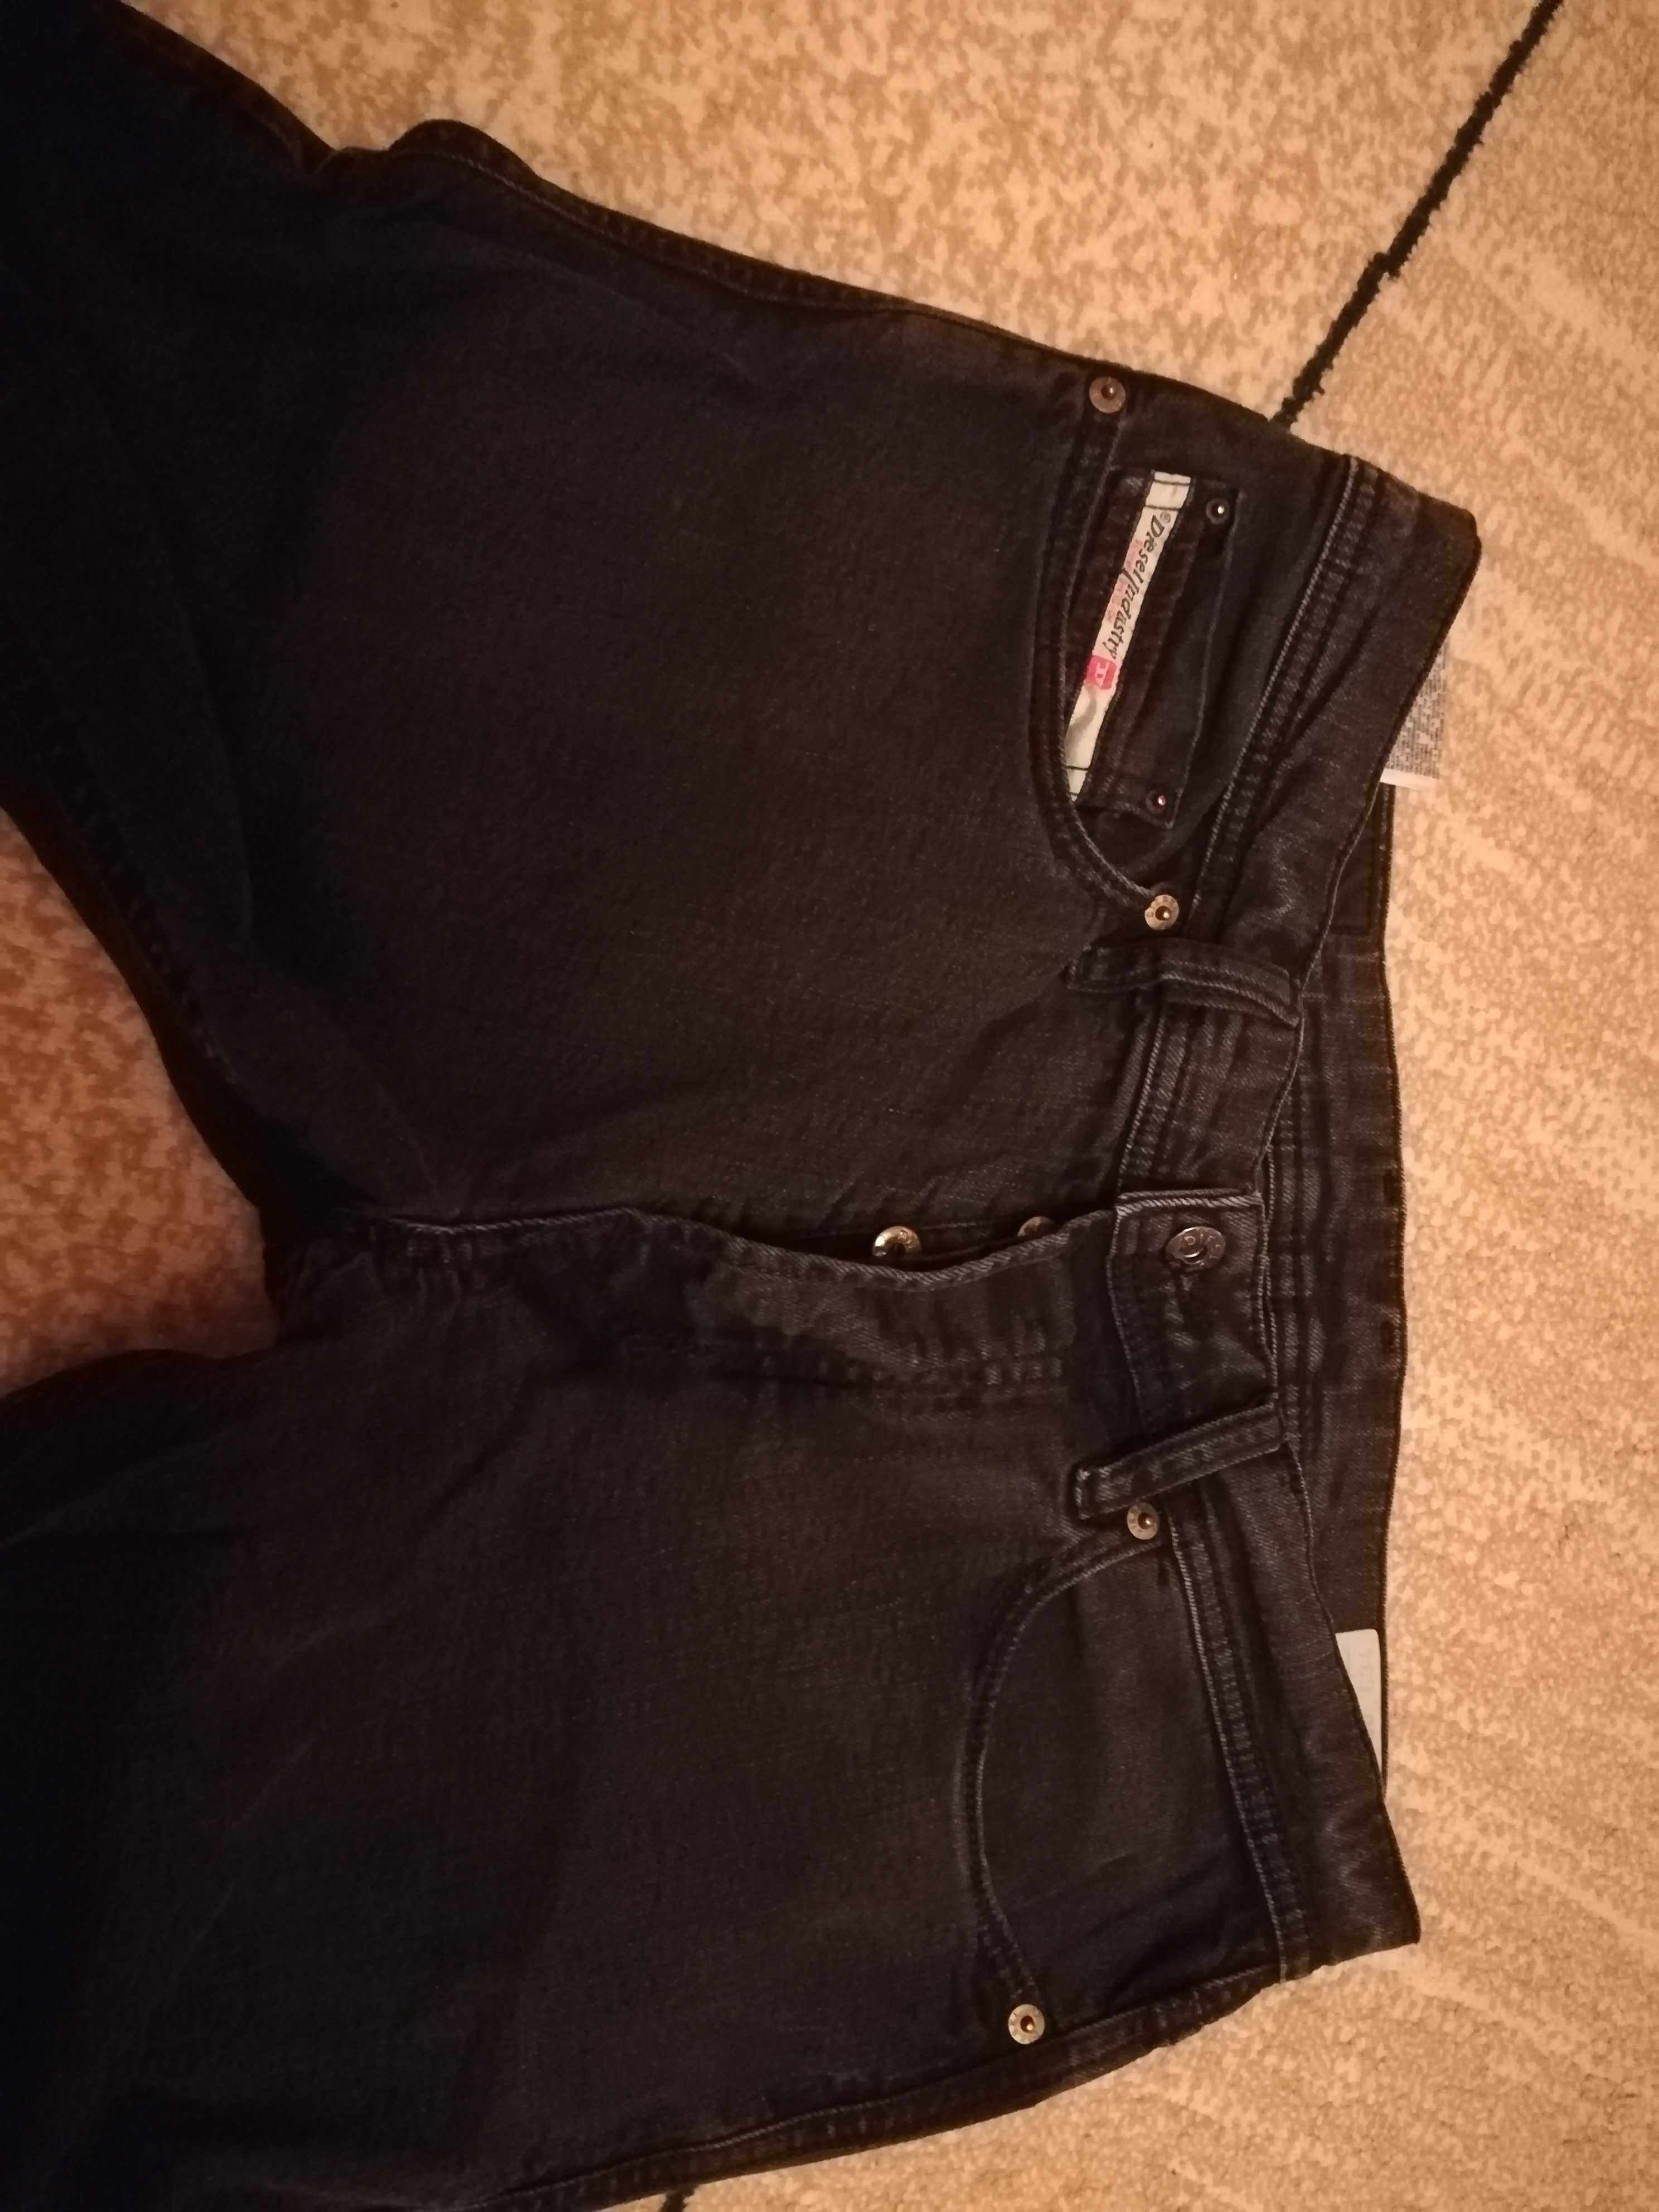 Spodnie męskie jeansowe firmy Diesel